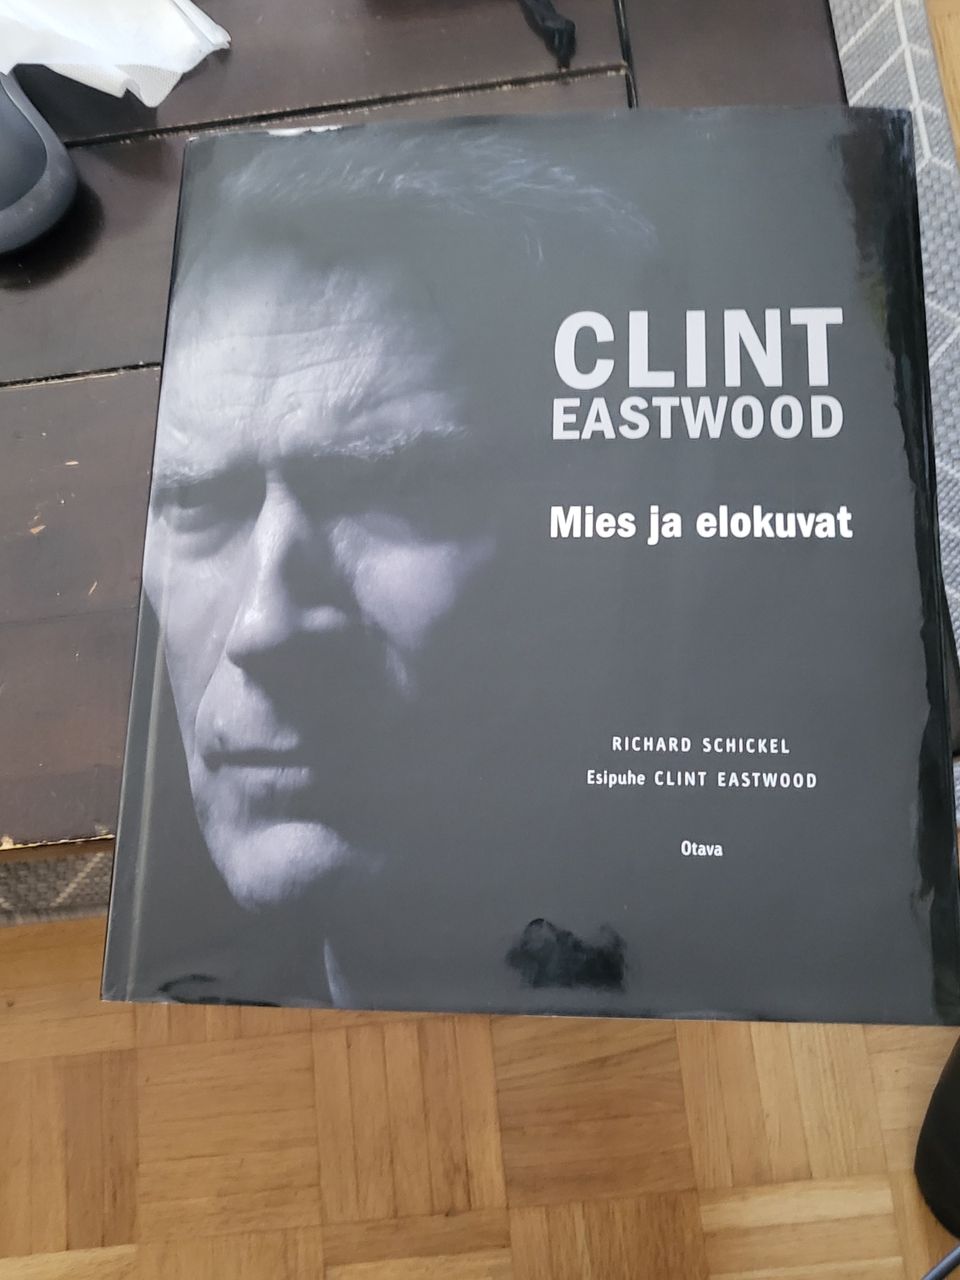 Clint Eastwood mies ja elokuvat